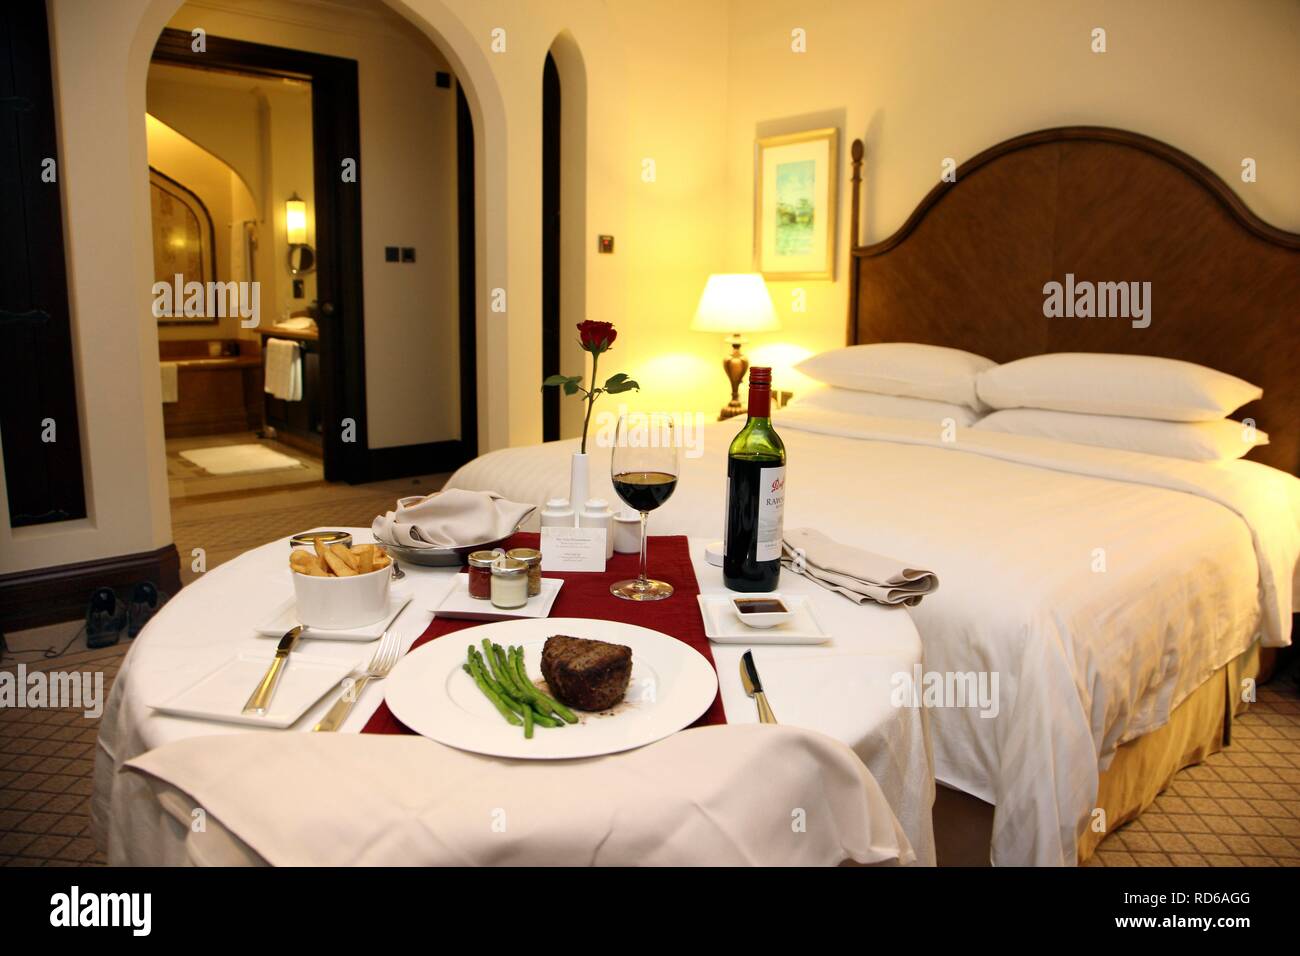 Zimmerservice im Hotel, Abendessen im Hotel Zimmer, Steak, Beilagen und Wein, auf einem gedeckten Tisch, Shangri-La Hotel Stockfoto